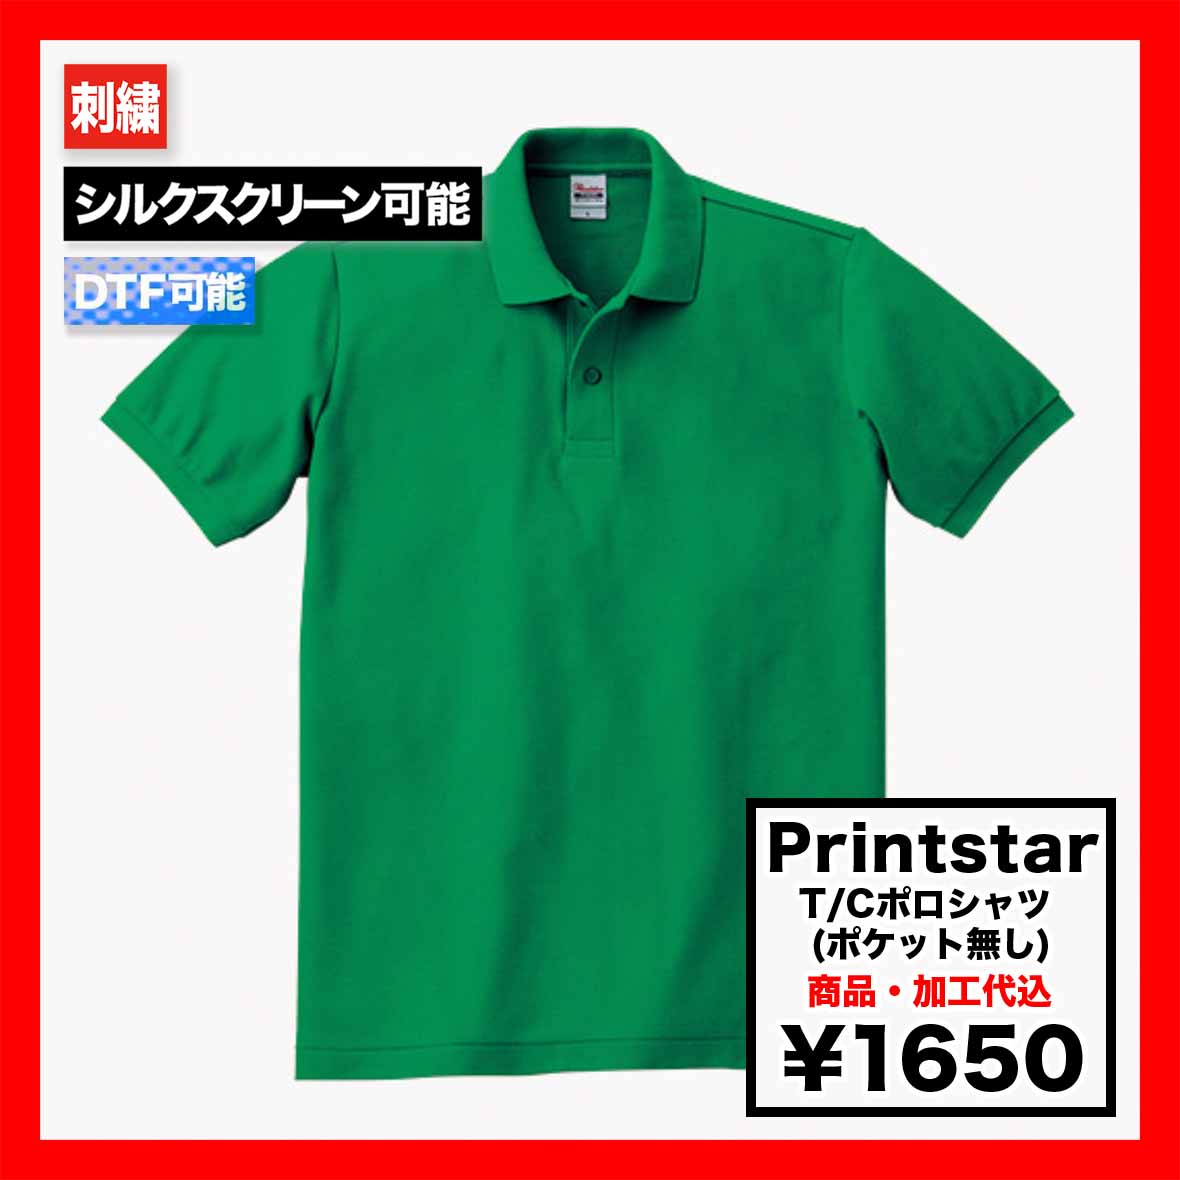 Printstar プリントスター 5.8oz T/Cポロシャツ (ポケット無し) (品番00141-NVP)